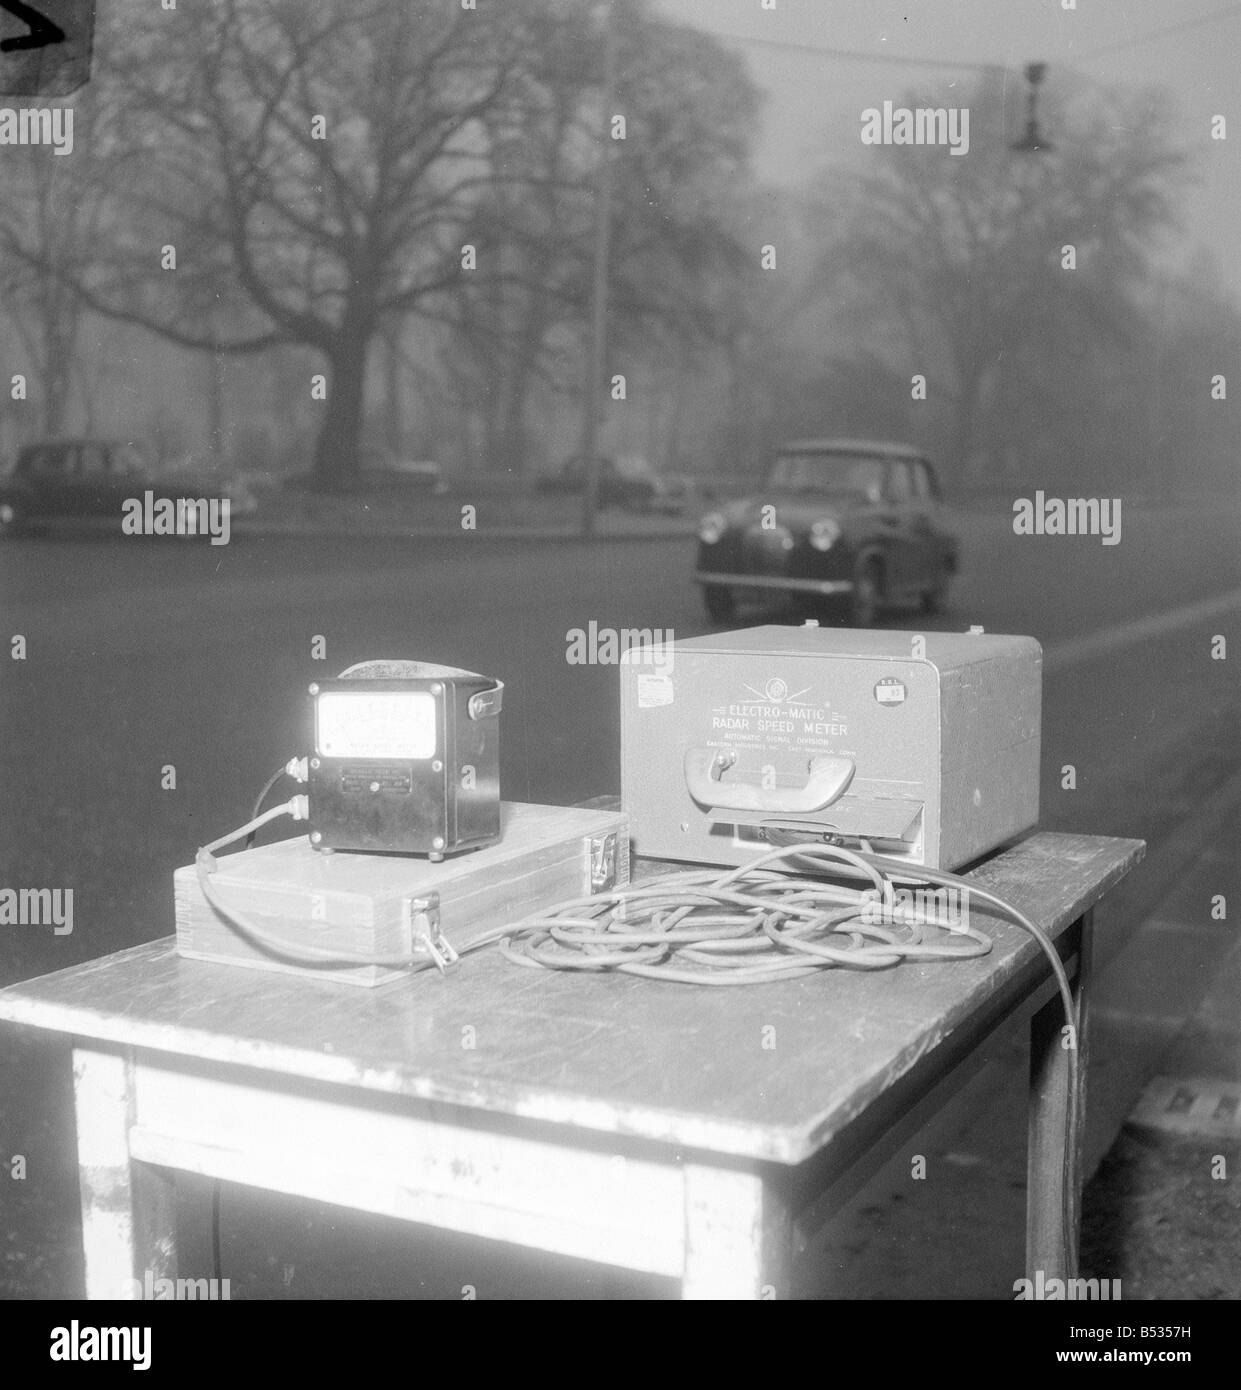 Radar Radarfallen wurden betrieben werden von der Metropolitan Police ab Januar 1958 Patrol Officer John Ley betreibt die Radar-Speedmeter auf Chelsea Embankment Kamera-Ausrüstung der 1950er Jahre Stockfoto